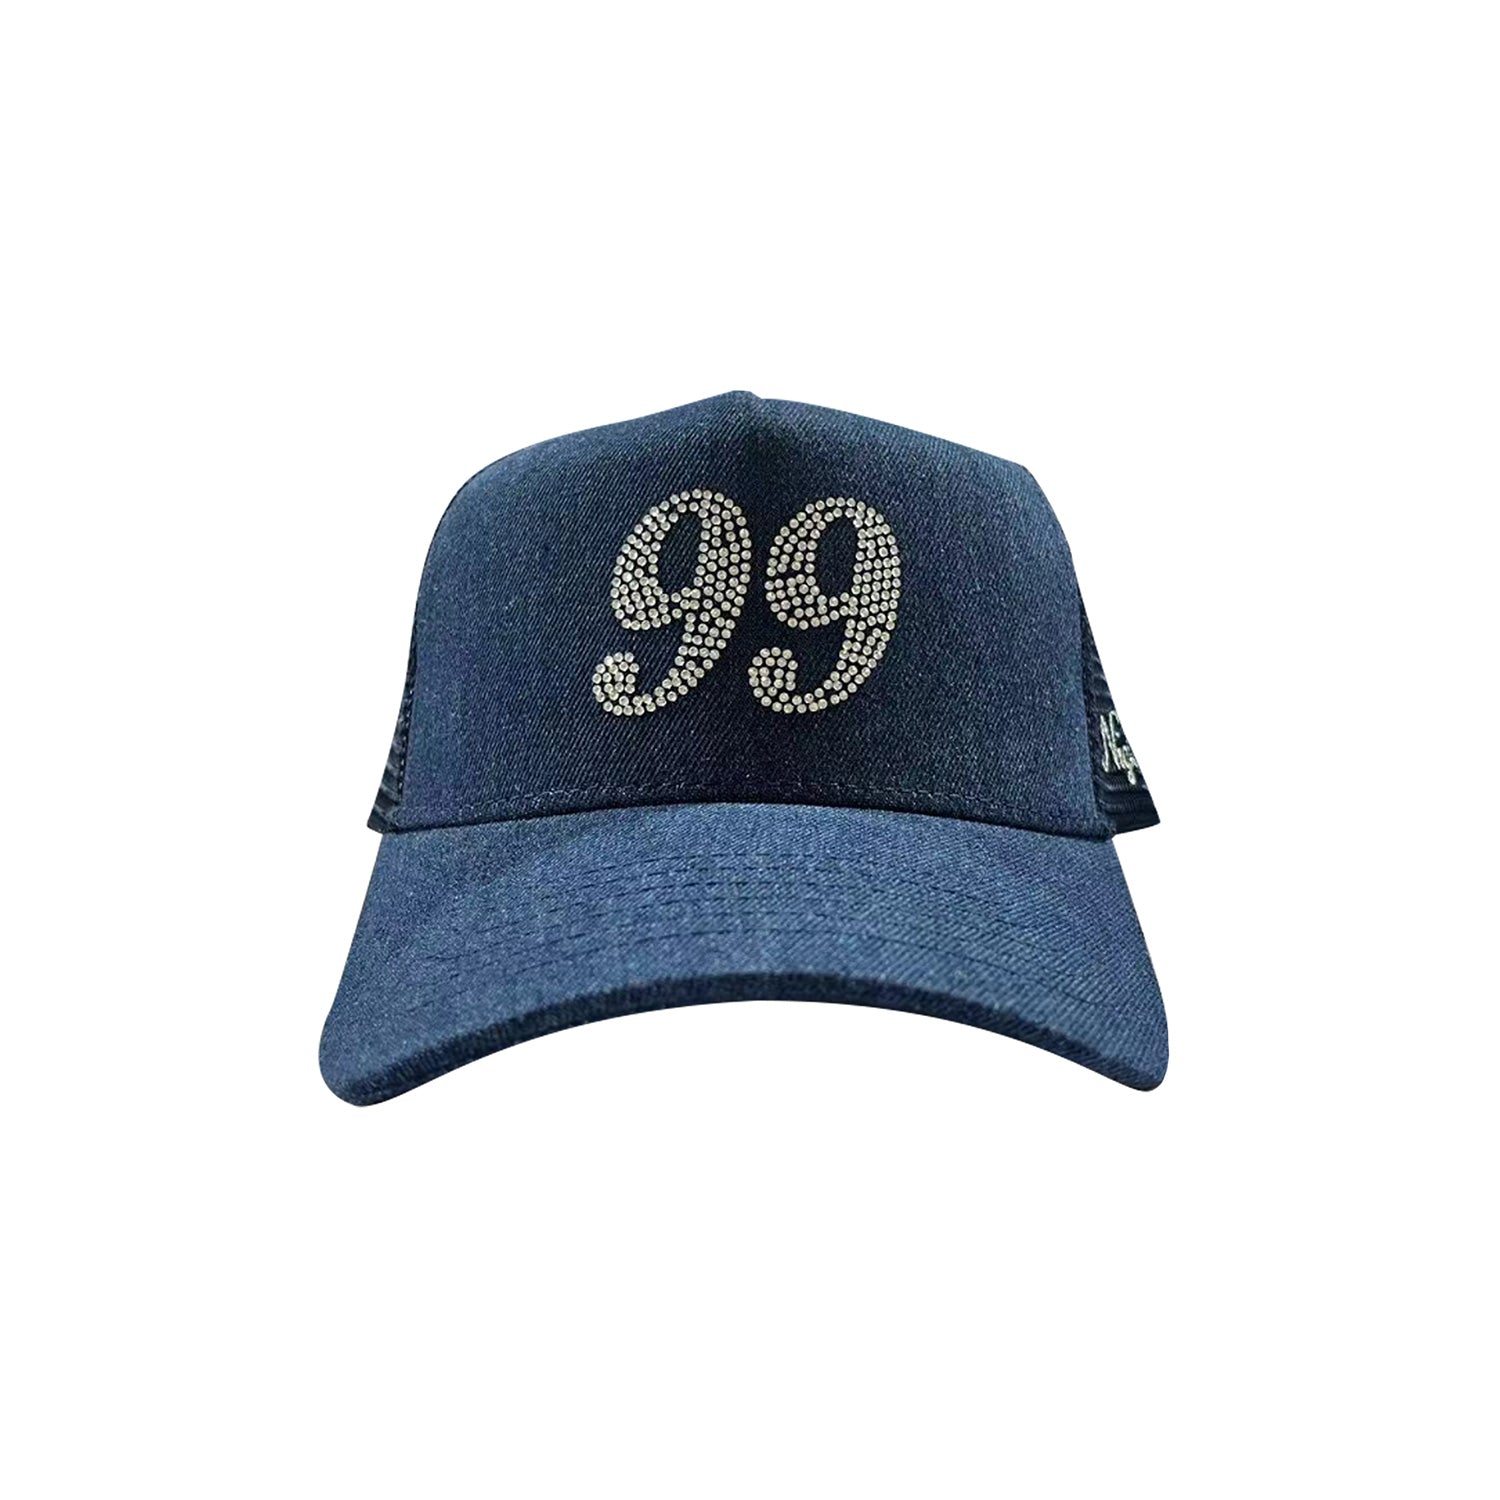 99 NIGHTS TRUCKER HAT